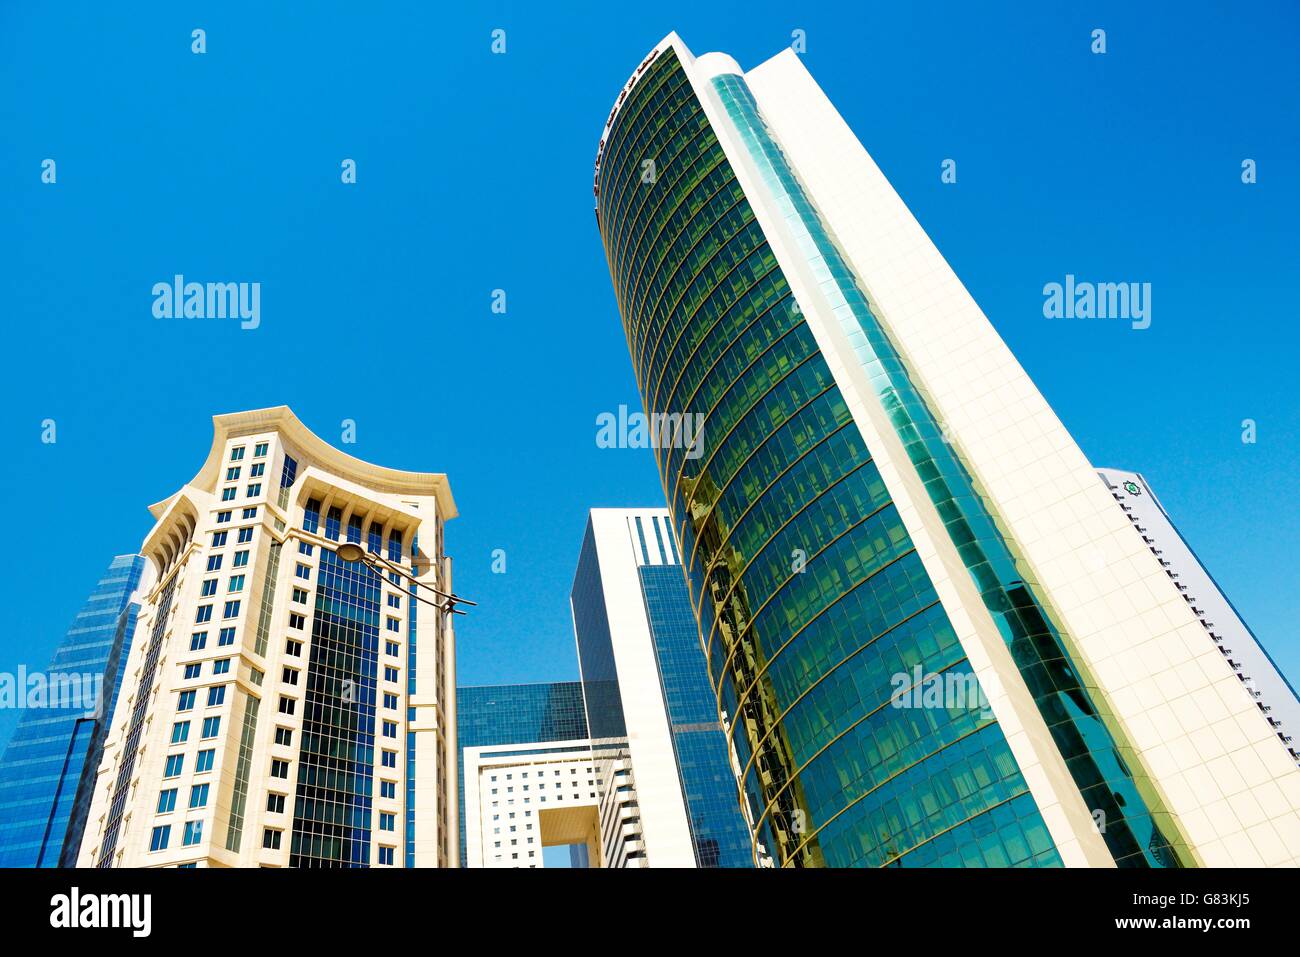 Centre-ville à l'ouest de la région de la baie de Doha, au Qatar. majlis al taawon street. gauche est la tour Burj al qassar est droite tour comité olympique Banque D'Images